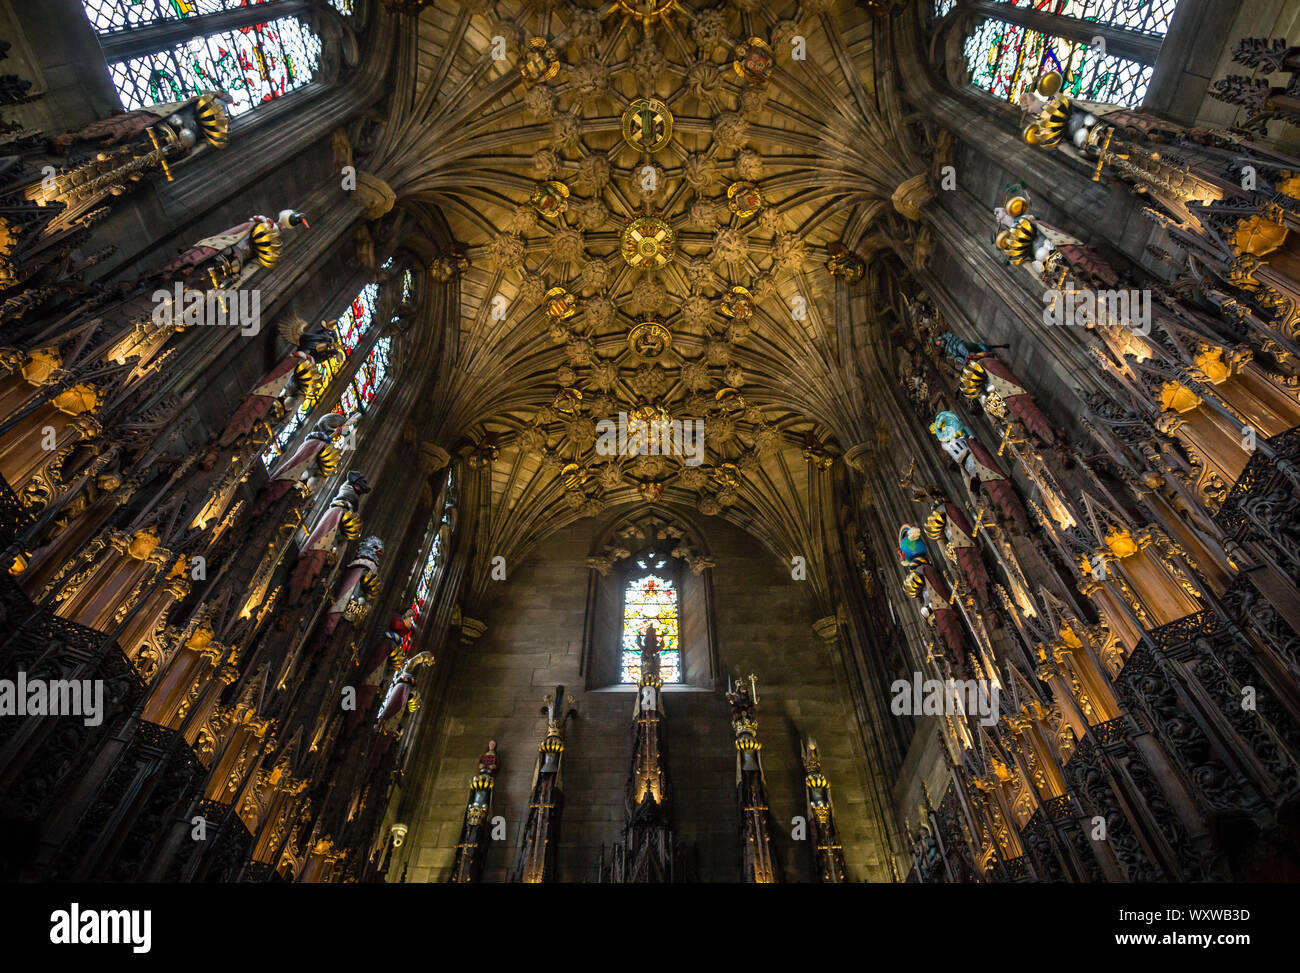 Das Innere und die Decke der Thistle Chapel der St Giles Cathedral, Edinburgh, Schottland. Stockfoto